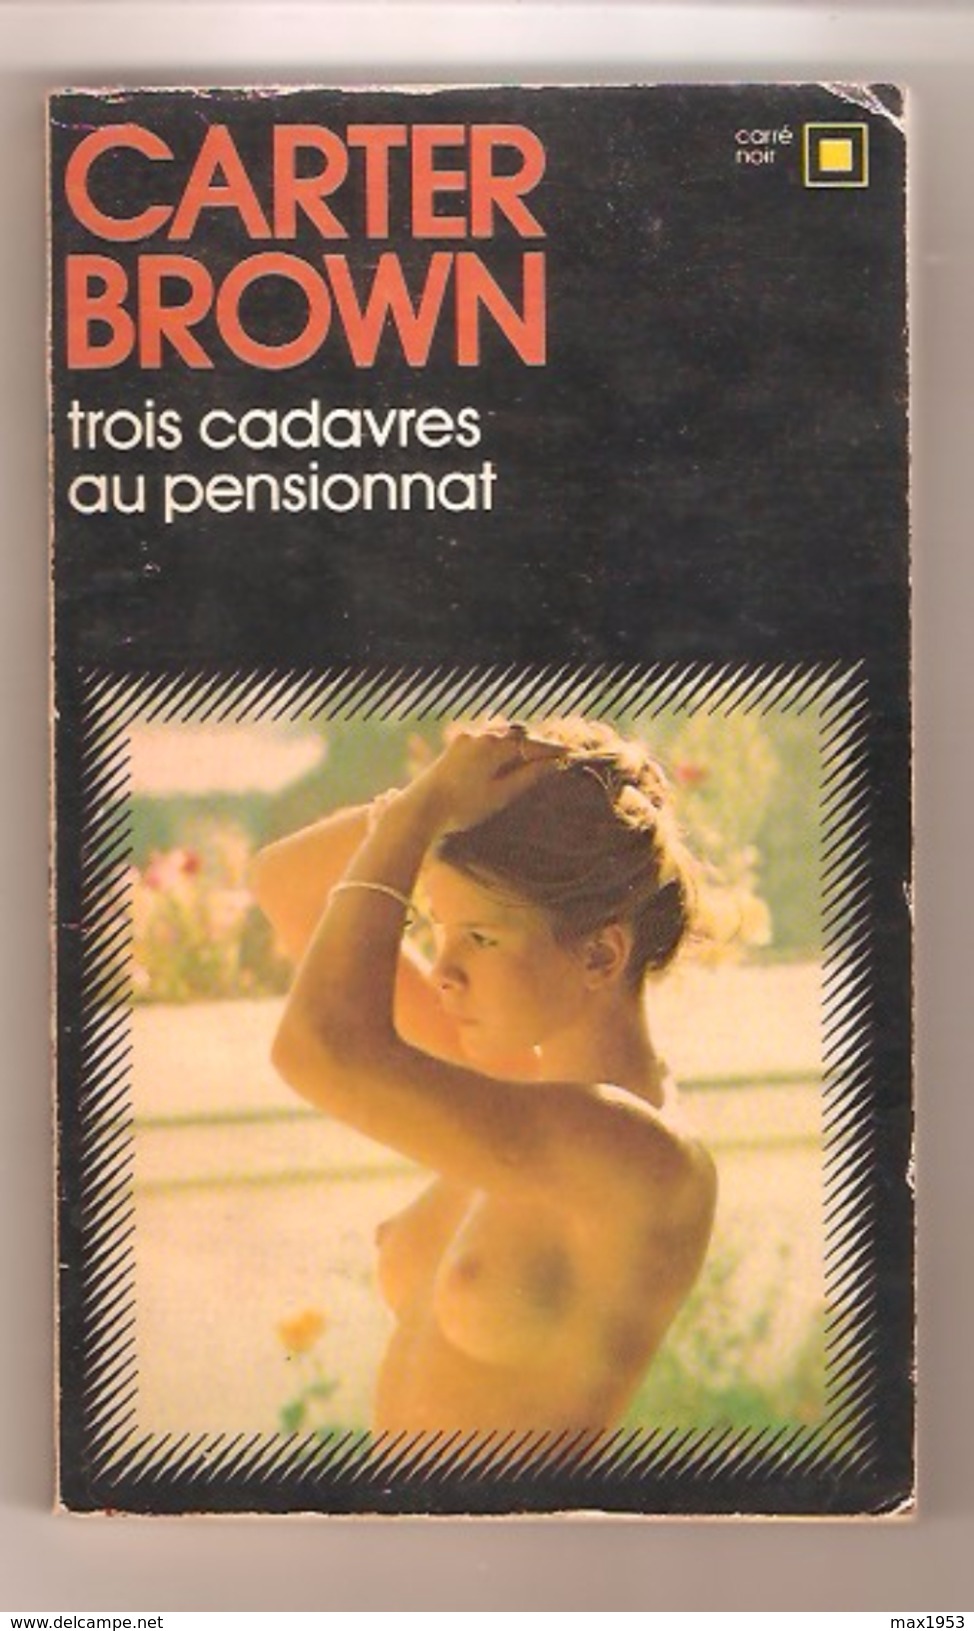 CARTER BROWN - Trois Cadavres Au Pensionnat - Carré Noir N° 112 - 1973 - Hachette - Point Rouge